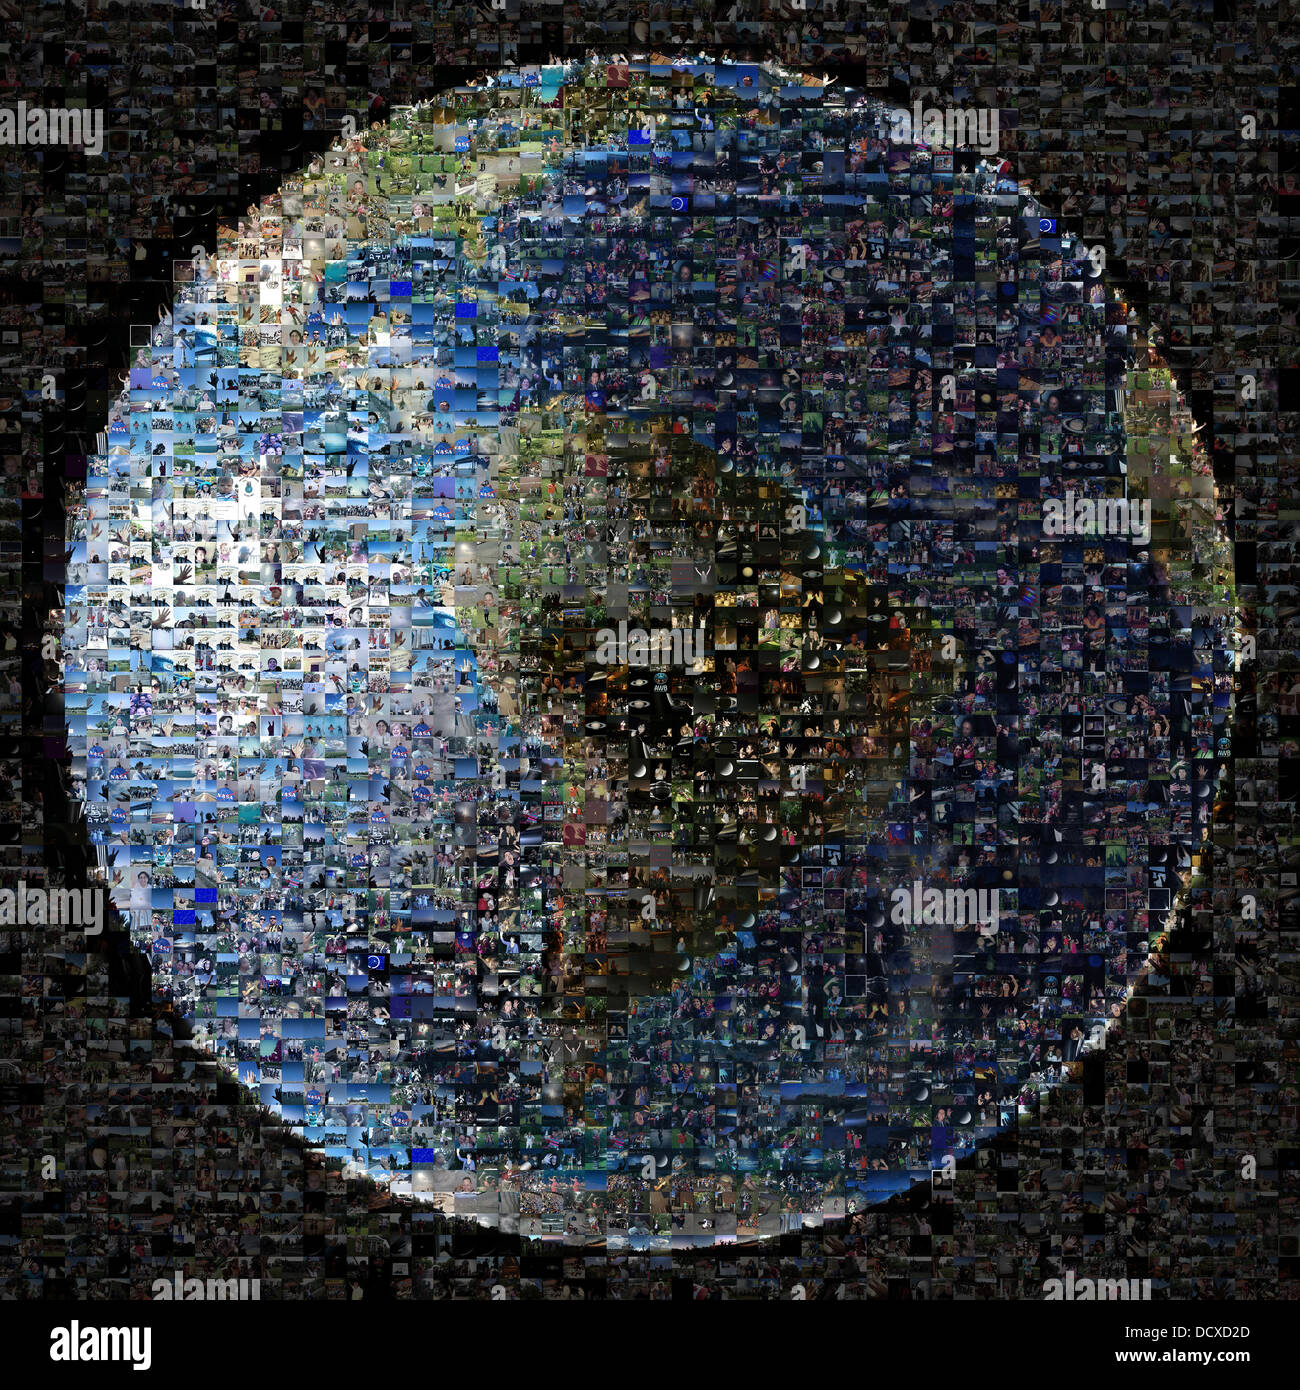 Ein Verbund aus 1400 Bilder aus mehr als 40 Ländern und 30 US-Bundesstaaten selbst als Teil der Welle bei Saturn-Veranstaltung, organisiert von der NASA Cassini Mission 22. August 2013. Die Veranstaltung am 19. Juli 2013, war der Tag der Raumsonde Cassini wieder in Richtung Erde zu unserem Bild als Teil eines größeren Mosaiks des Saturn-Systems aktiviert. Stockfoto